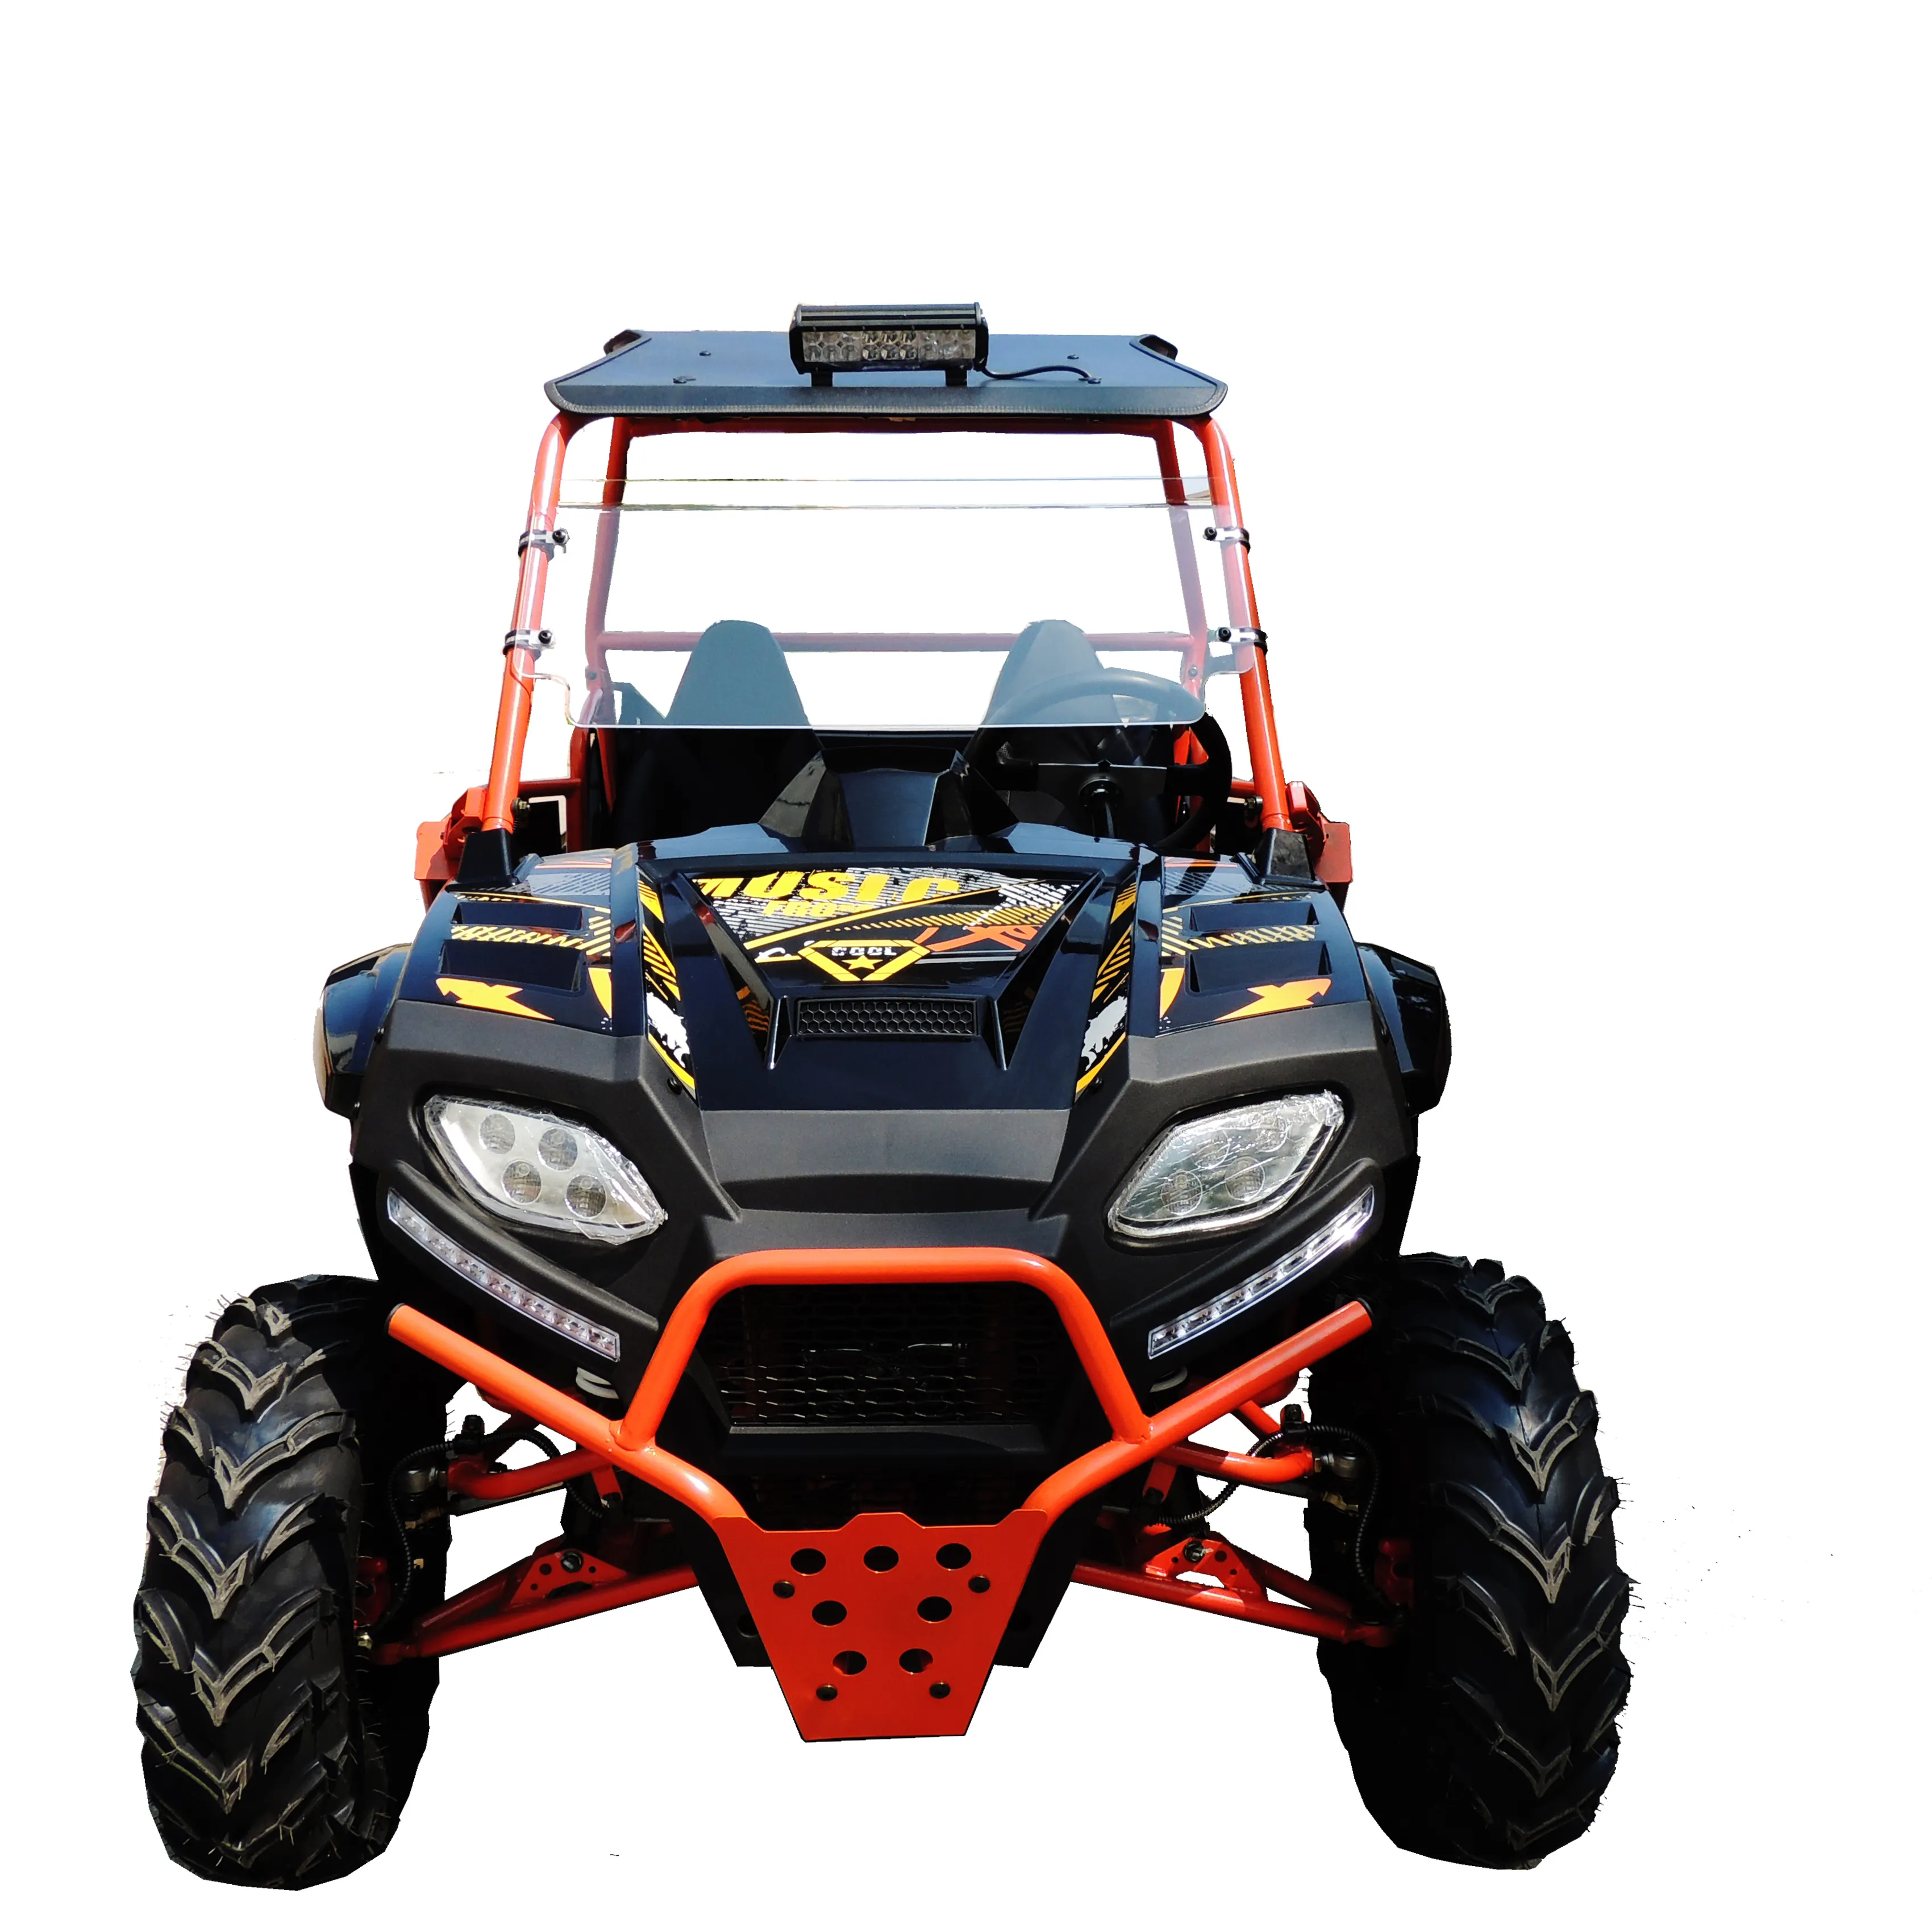 Musi-buggy tout-terrain 250cc, 4x2, buggy, transmission automatique latérale, sport, course utv, modèle, offre spéciale